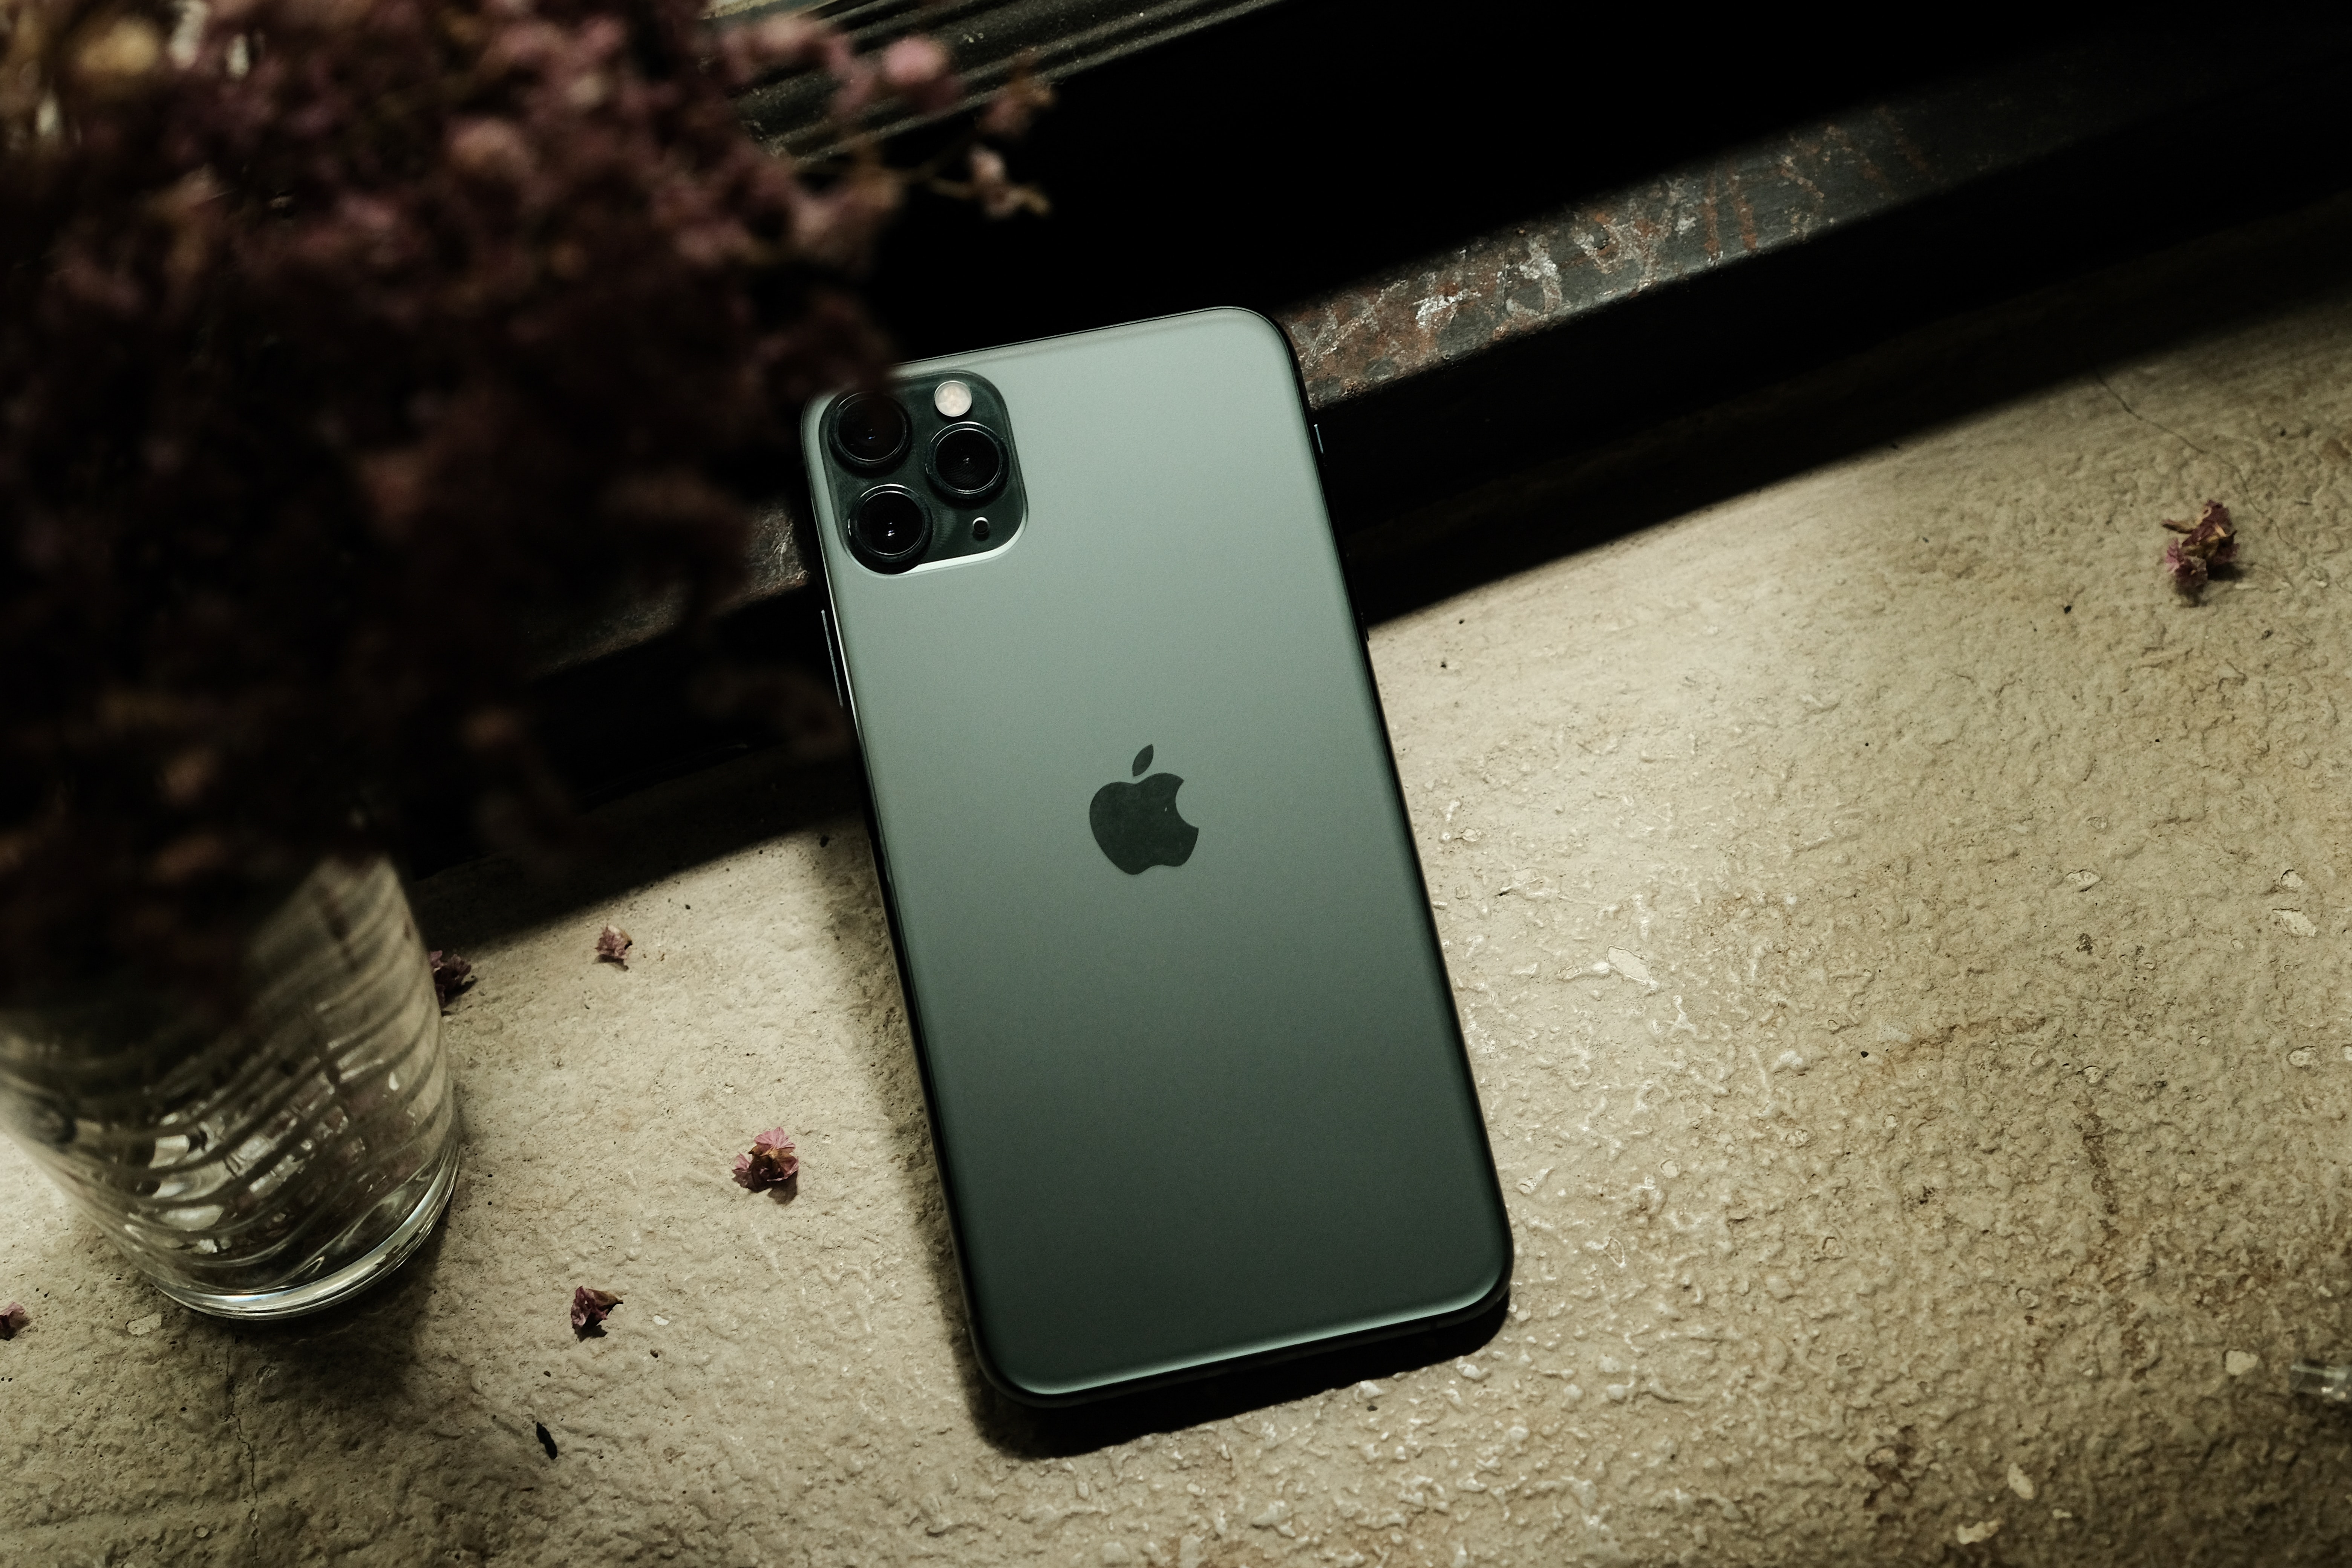 L'iPhone 11 Pro Max (64 Go) coûterait 443 euros à Apple